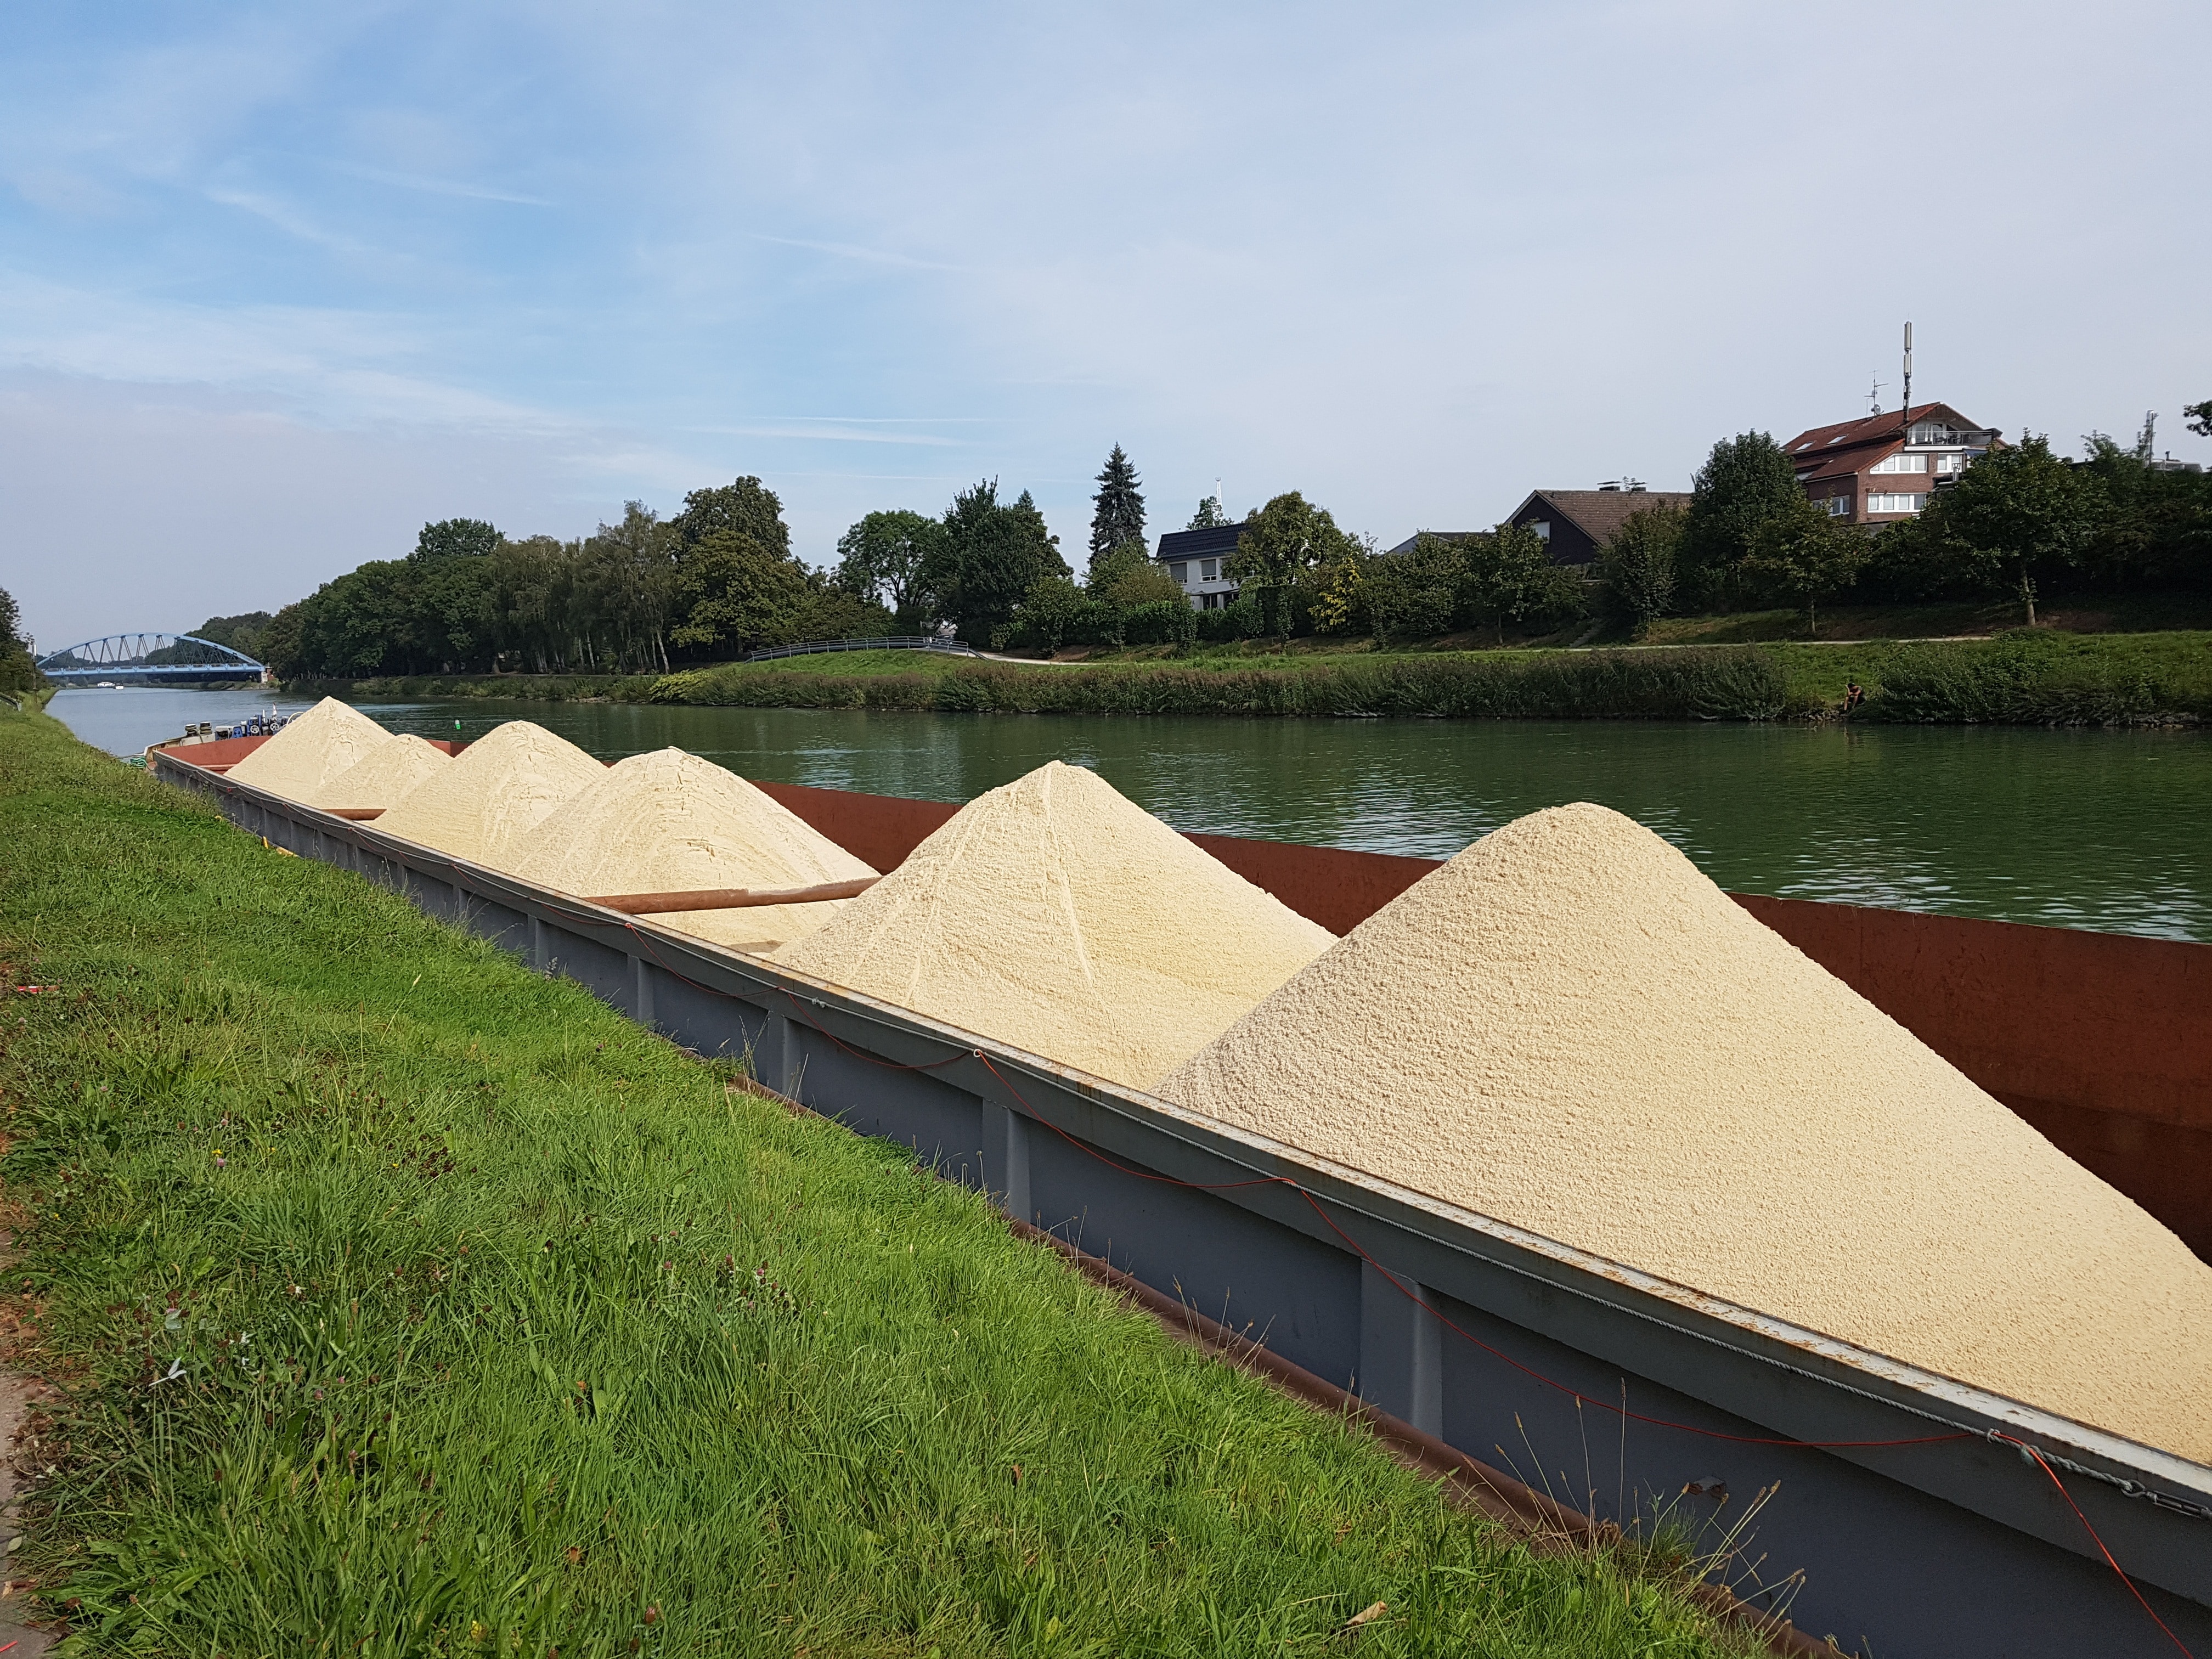 grains at the lake